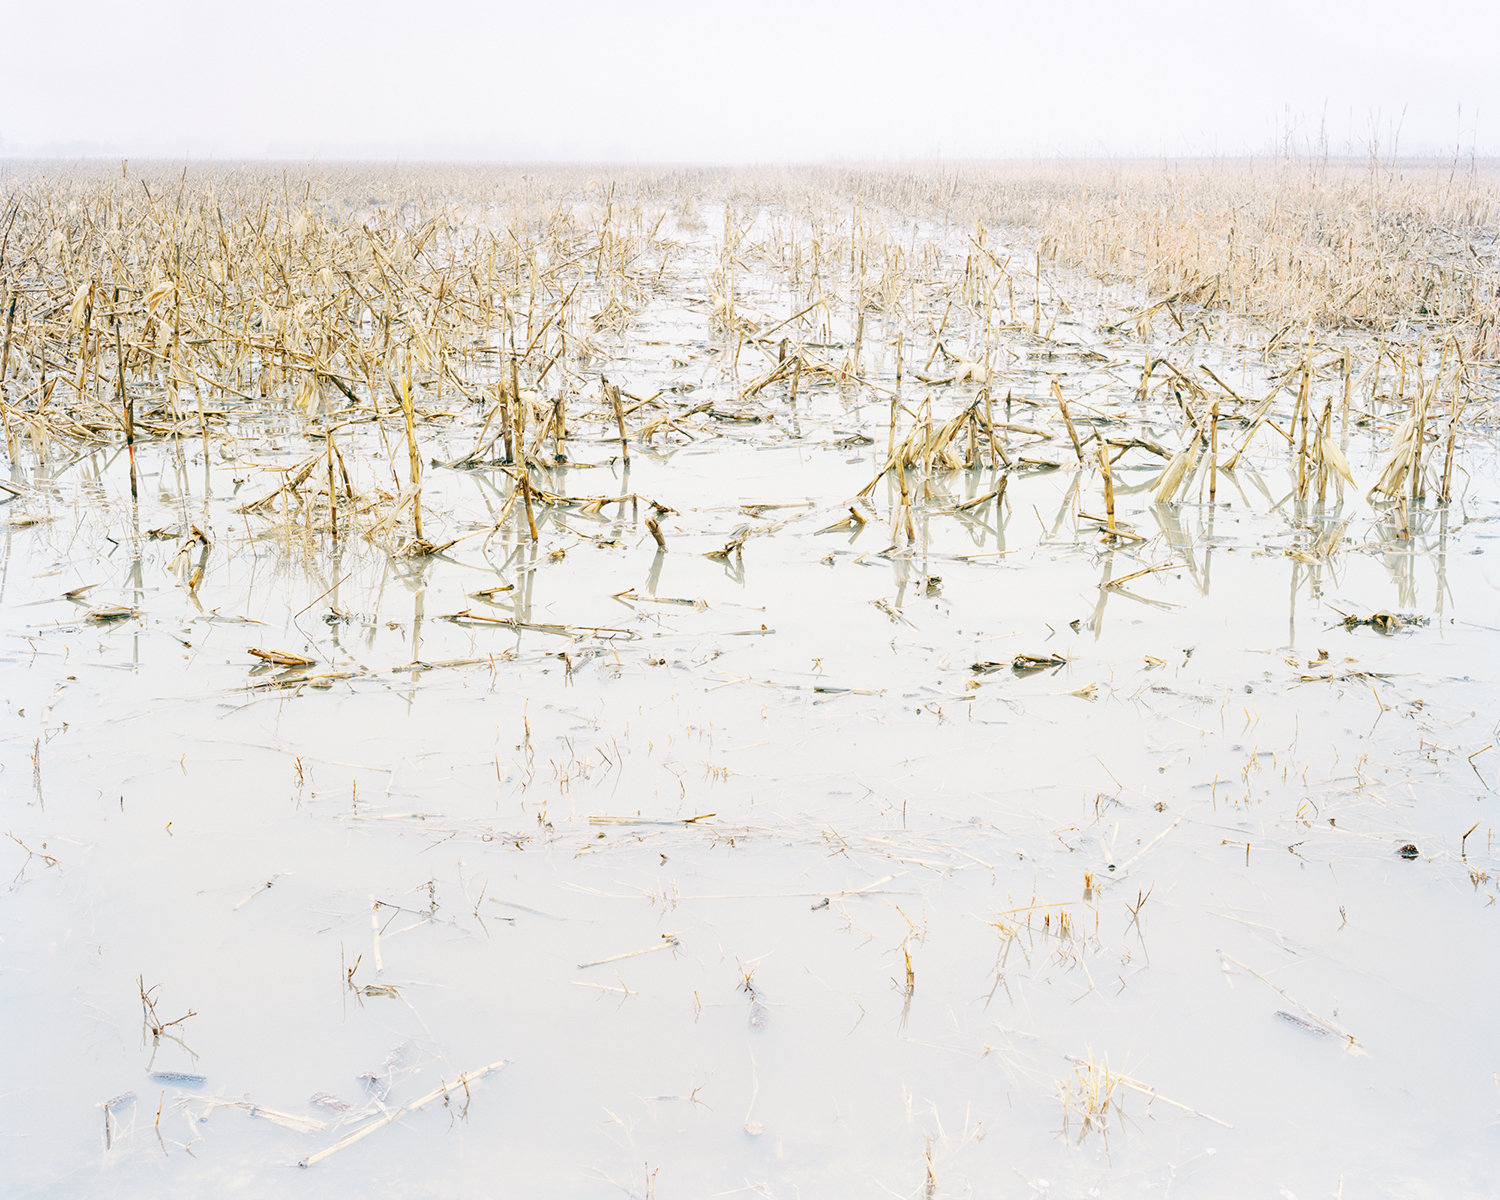 Frozen Crop, near MacDowell, KS